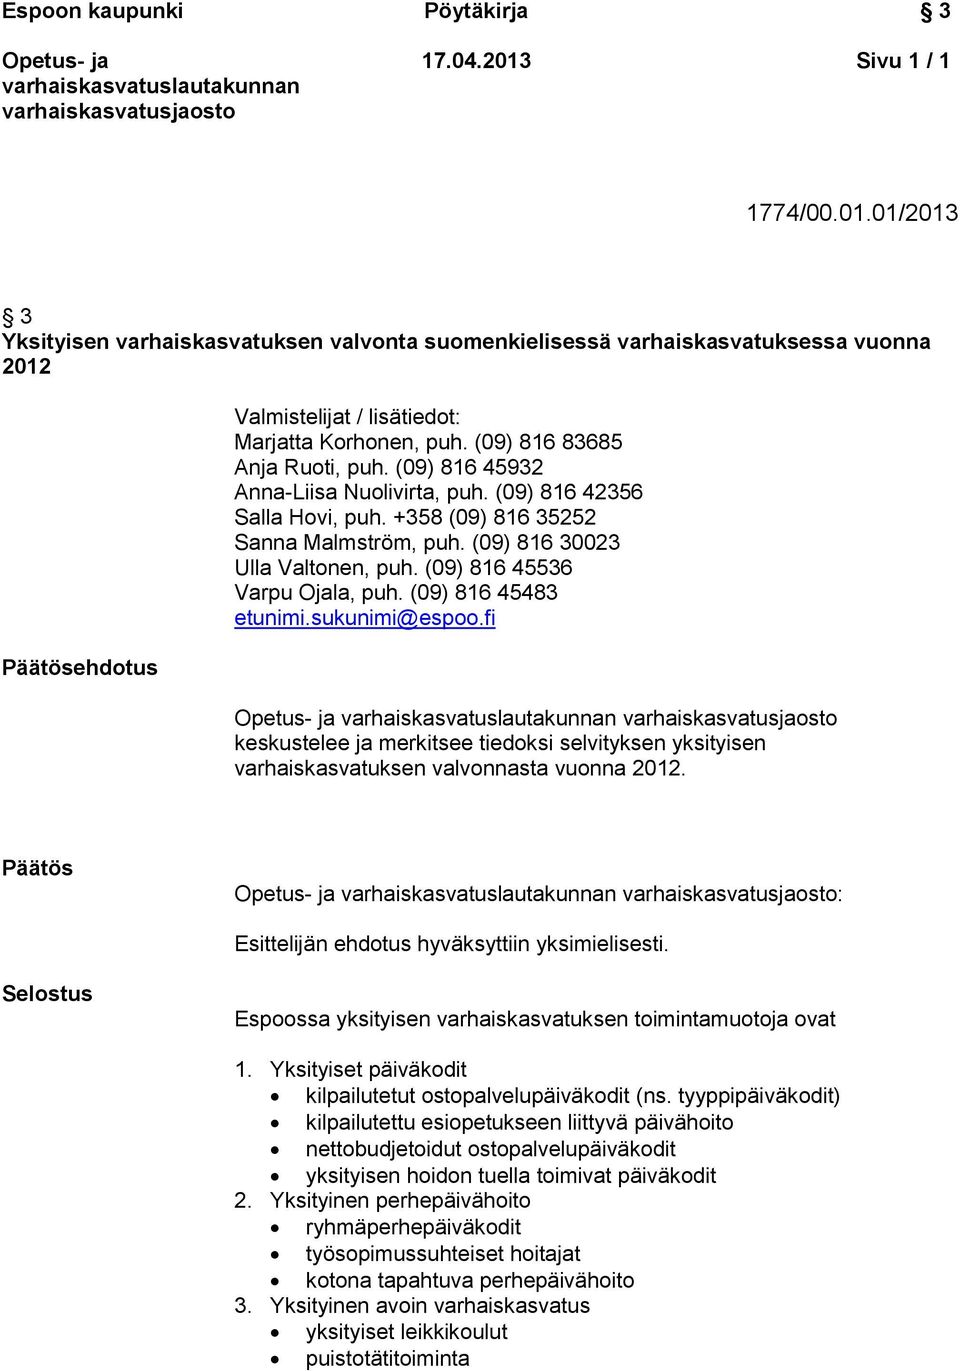 (09) 816 45536 Varpu Ojala, puh. (09) 816 45483 etunimi.sukunimi@espoo.fi keskustelee ja merkitsee tiedoksi selvityksen yksityisen varhaiskasvatuksen valvonnasta vuonna 2012.